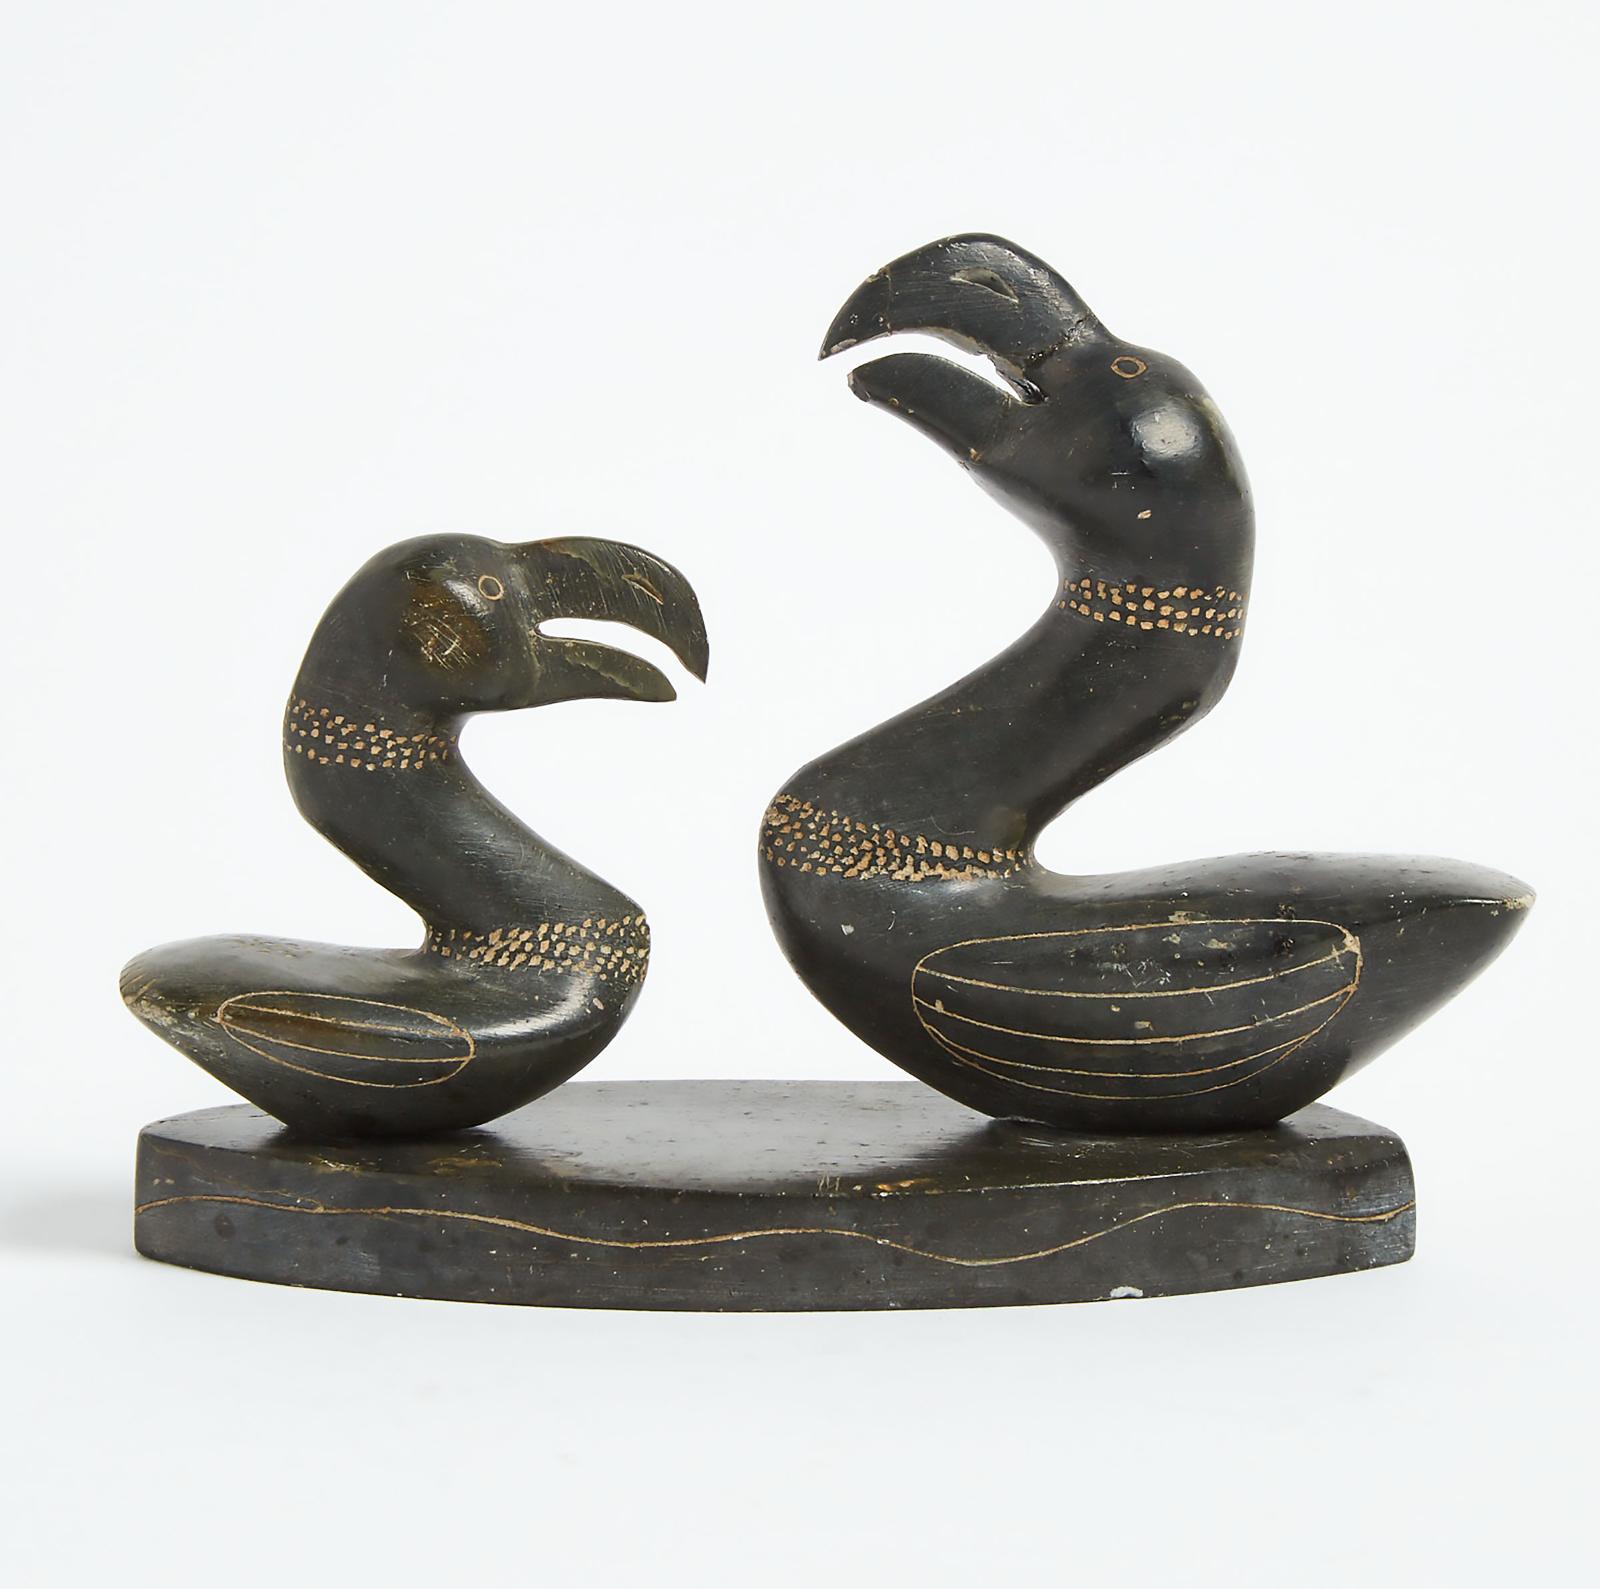 Lucassie Kumarluk (1921) - Two Birds